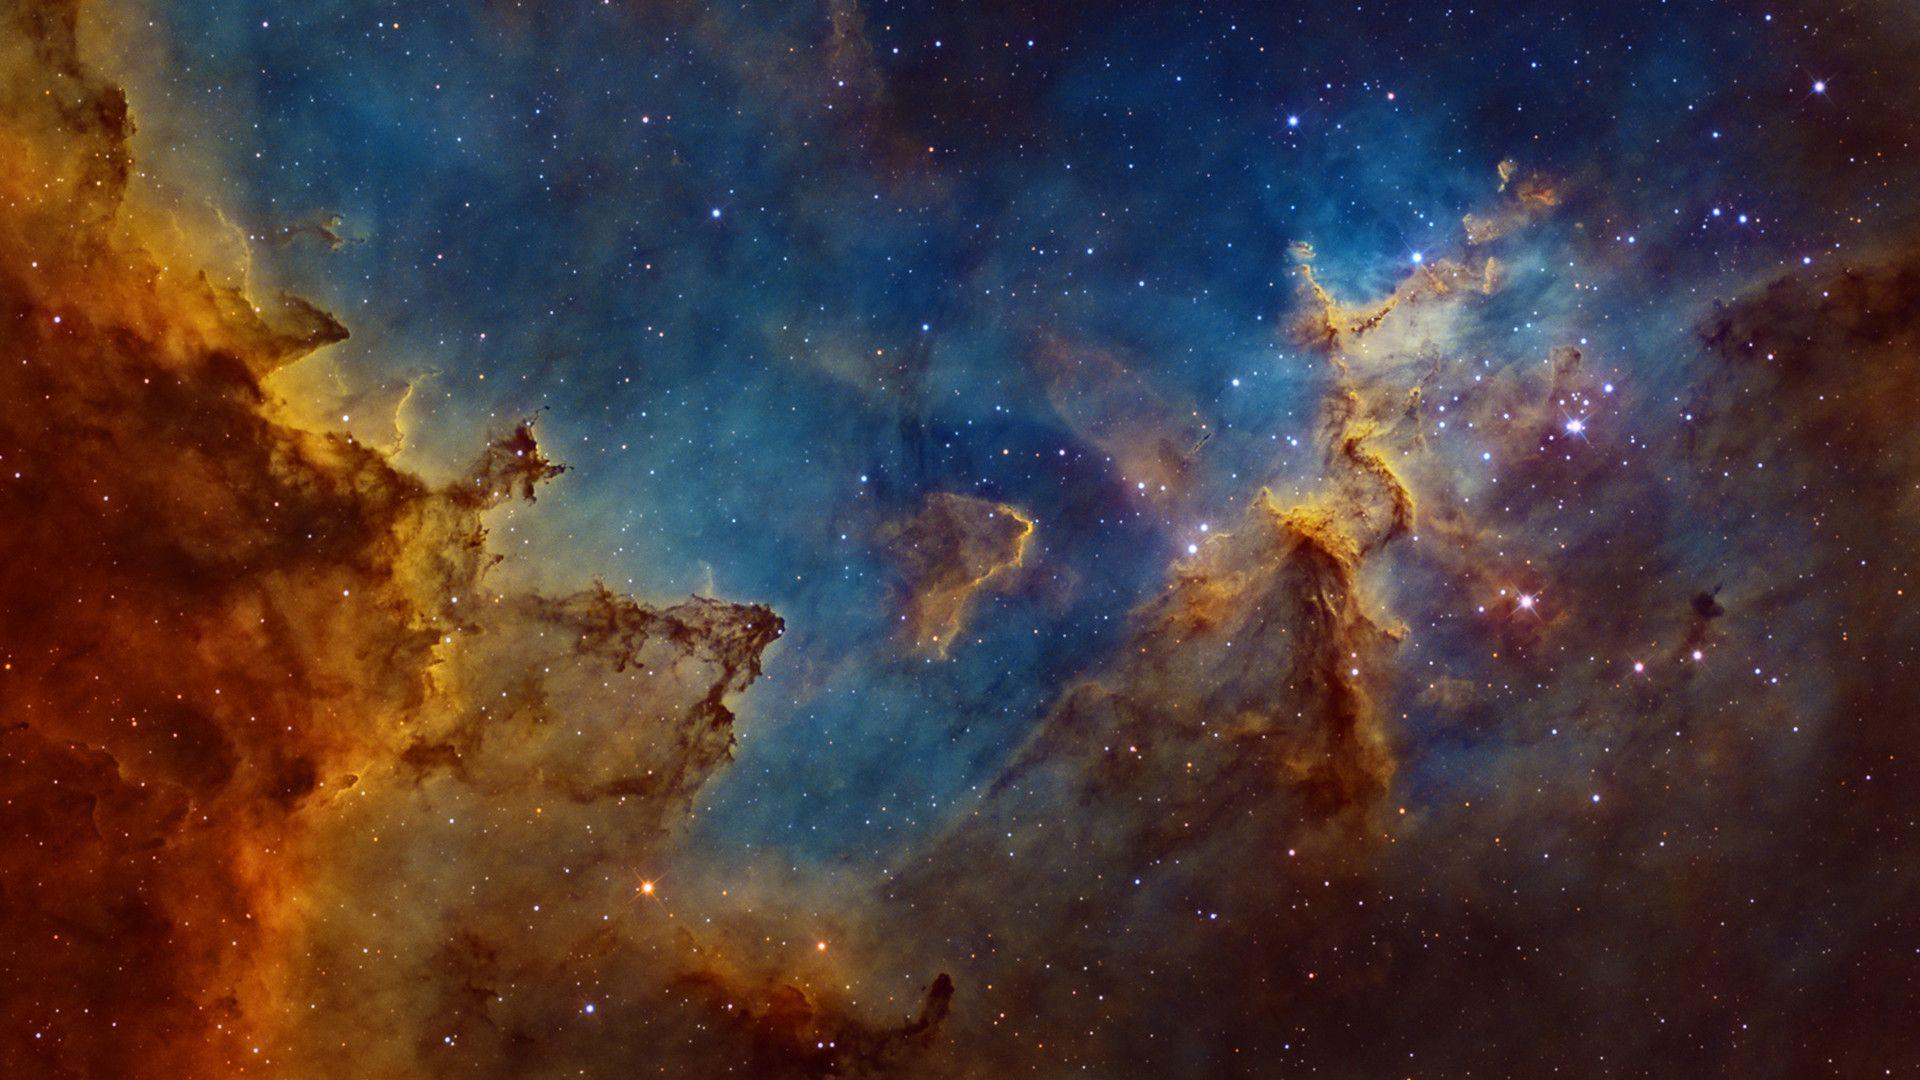 Carina Nebula Wallpapers - Top Free Carina Nebula Backgrounds